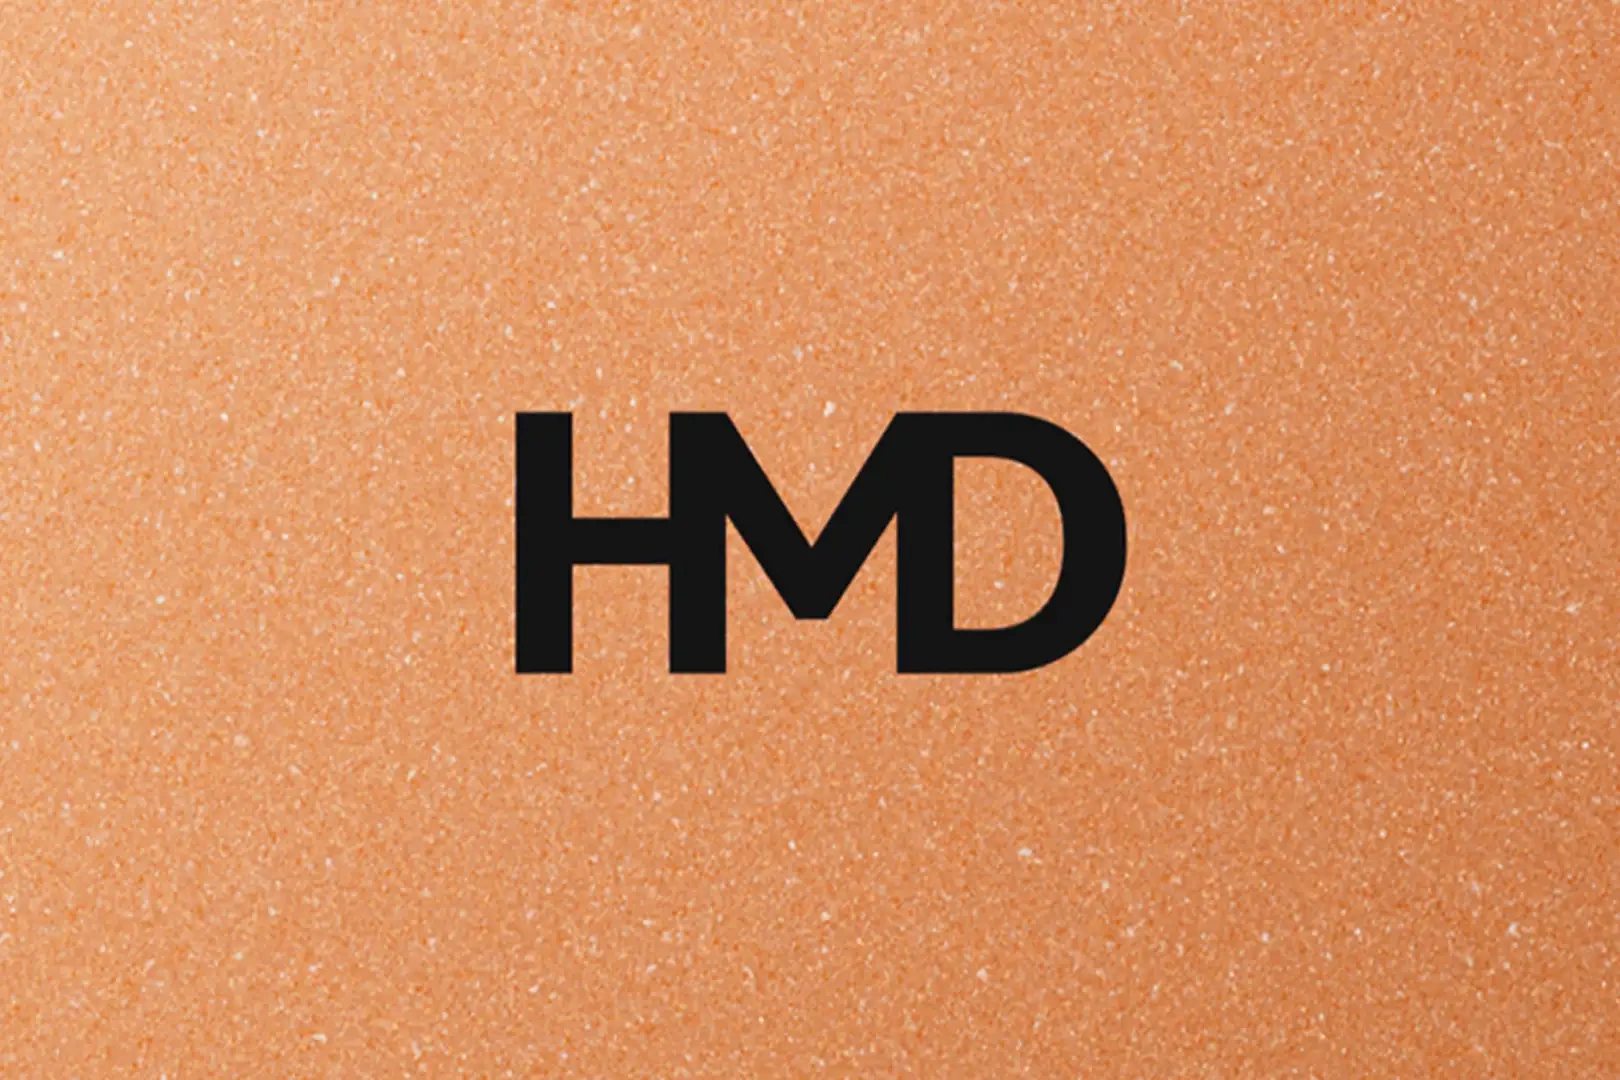 کمپانی HMD در تدارک عرضه گوشی XR21 و تبلت T21 با برند اختصاصی خود است